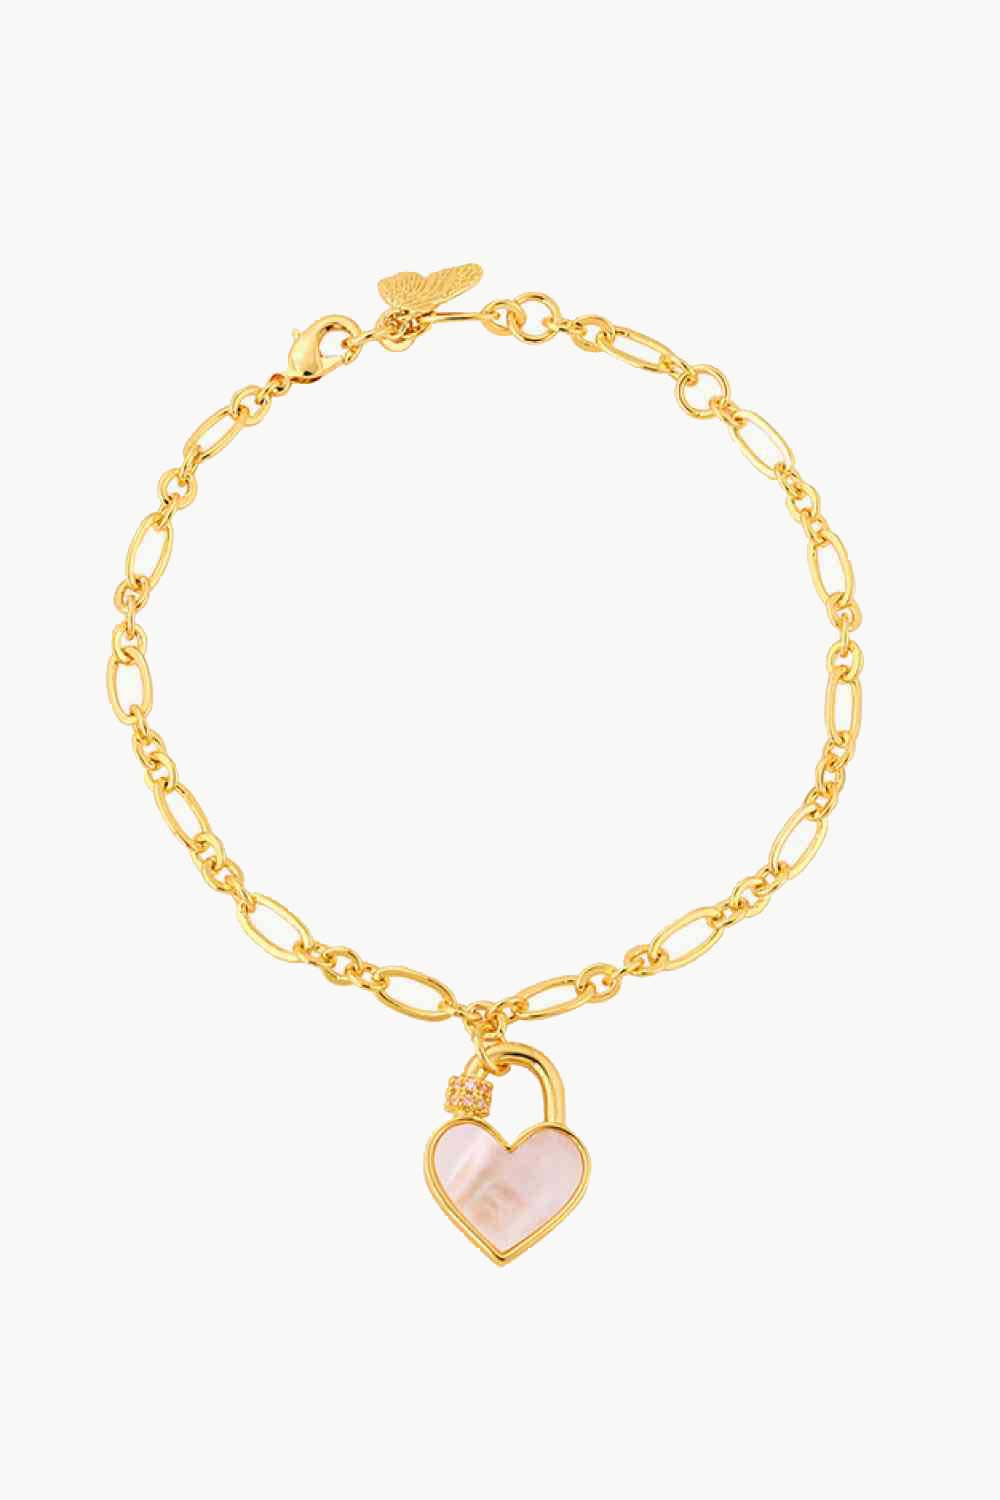 Heart Lock Charm Bracelet - White / One Size - Women’s Jewelry - Bracelets - 1 - 2024